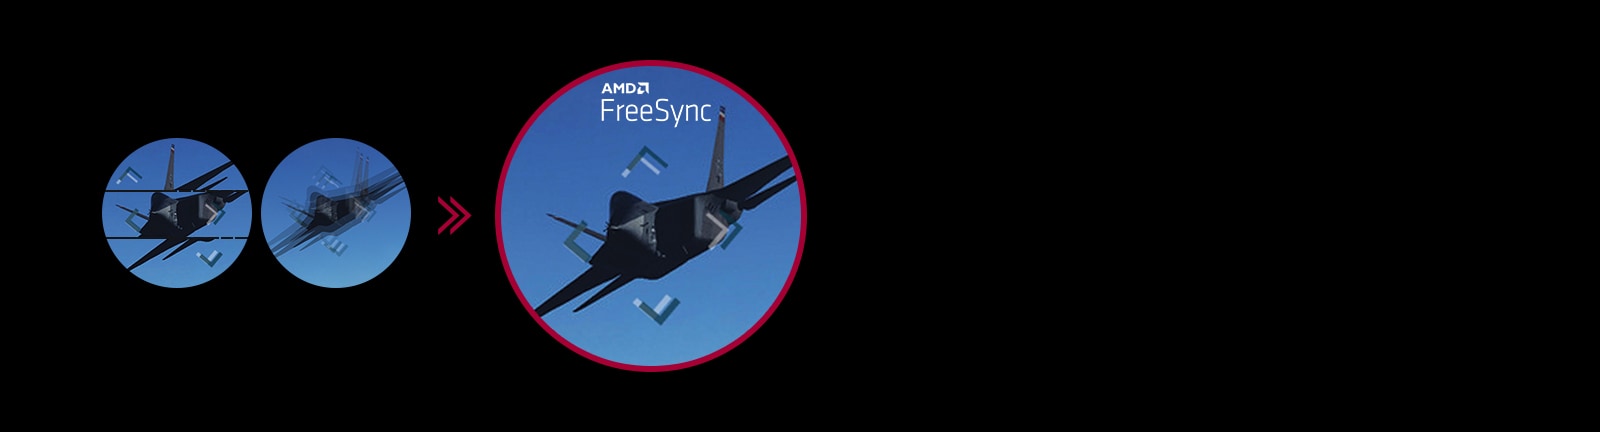 AMD FreeSync™ mang đến chuyển động nhanh và mượt mà trong các trò chơi có độ phân giải cao, nhịp độ nhanh